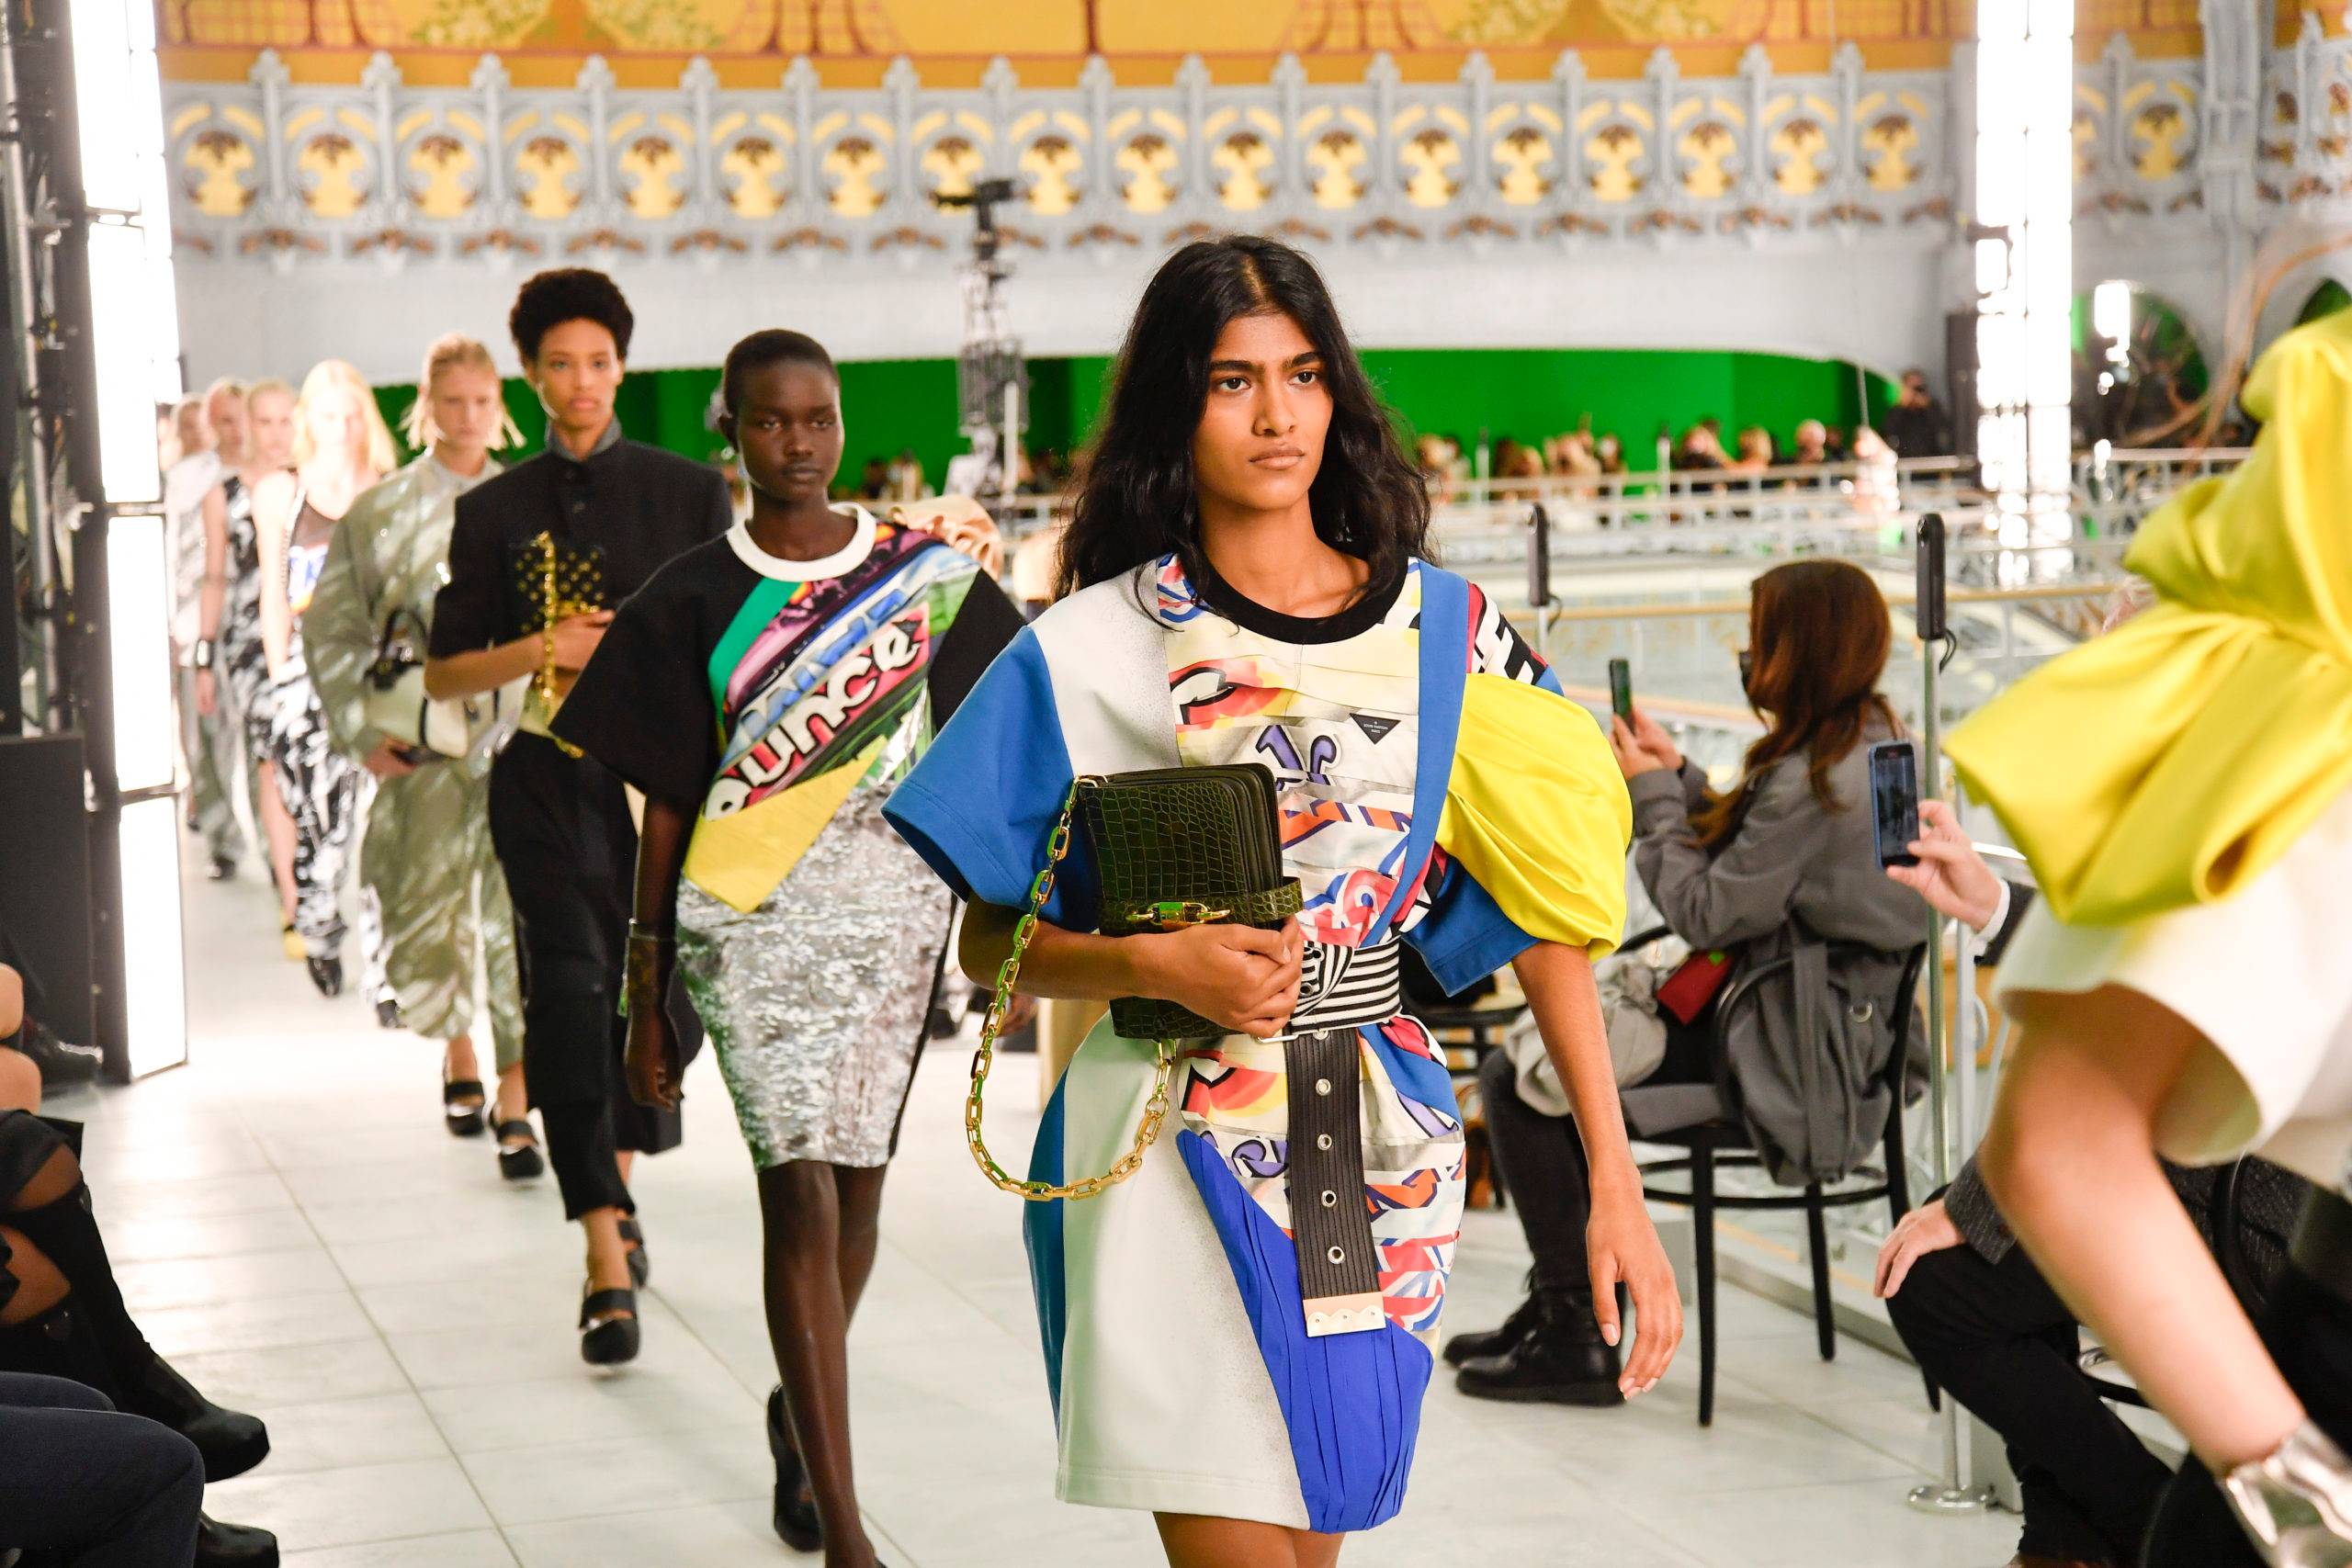 Louis Vuitton présente une collection neutre et engagée pour le printemps-été 2021